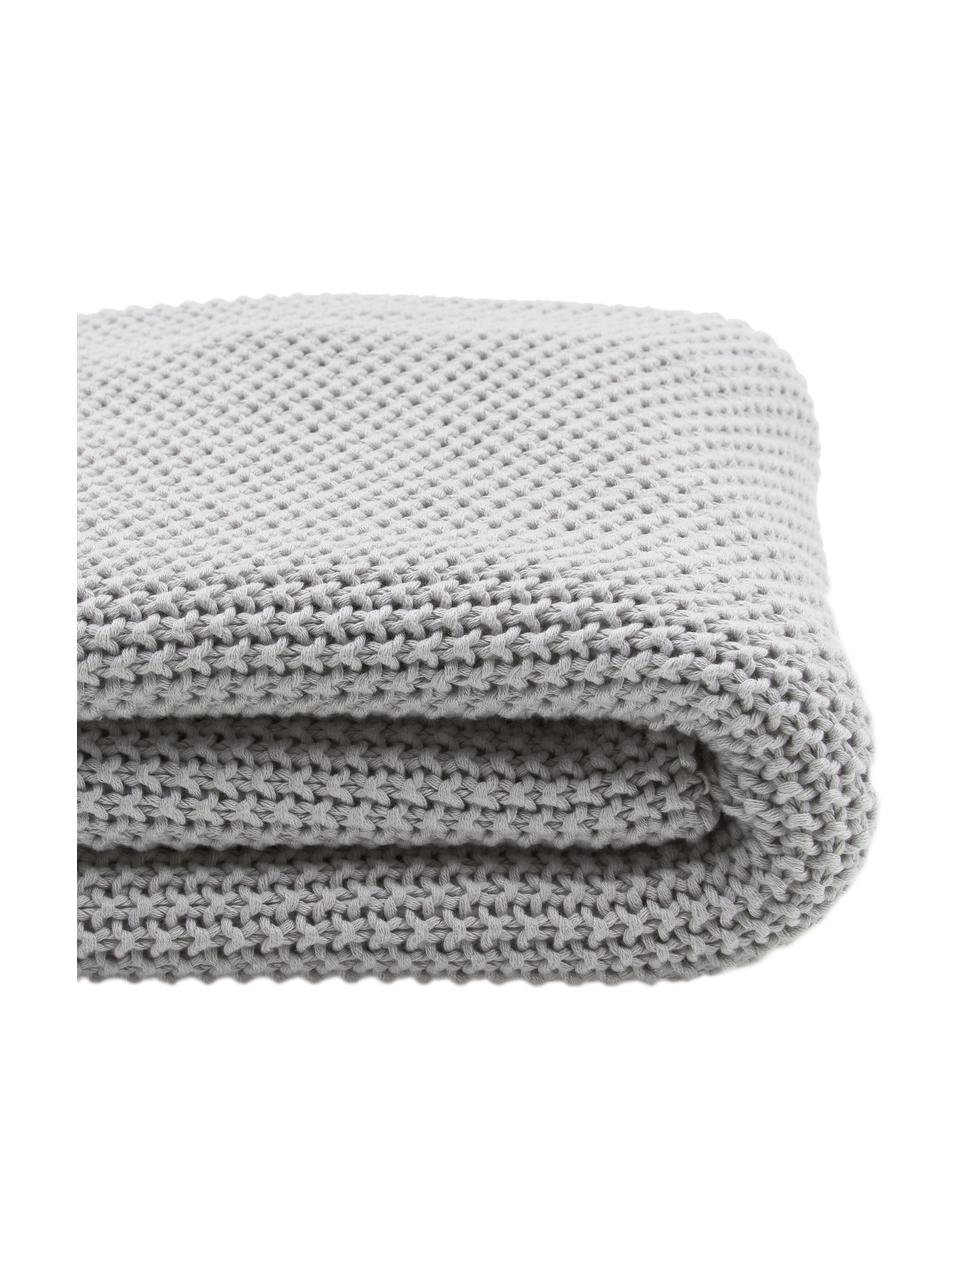 Coperta a maglia color grigio con pompon Molly, 100% cotone, Grigio chiaro, Larg. 130 x Lung. 170 cm